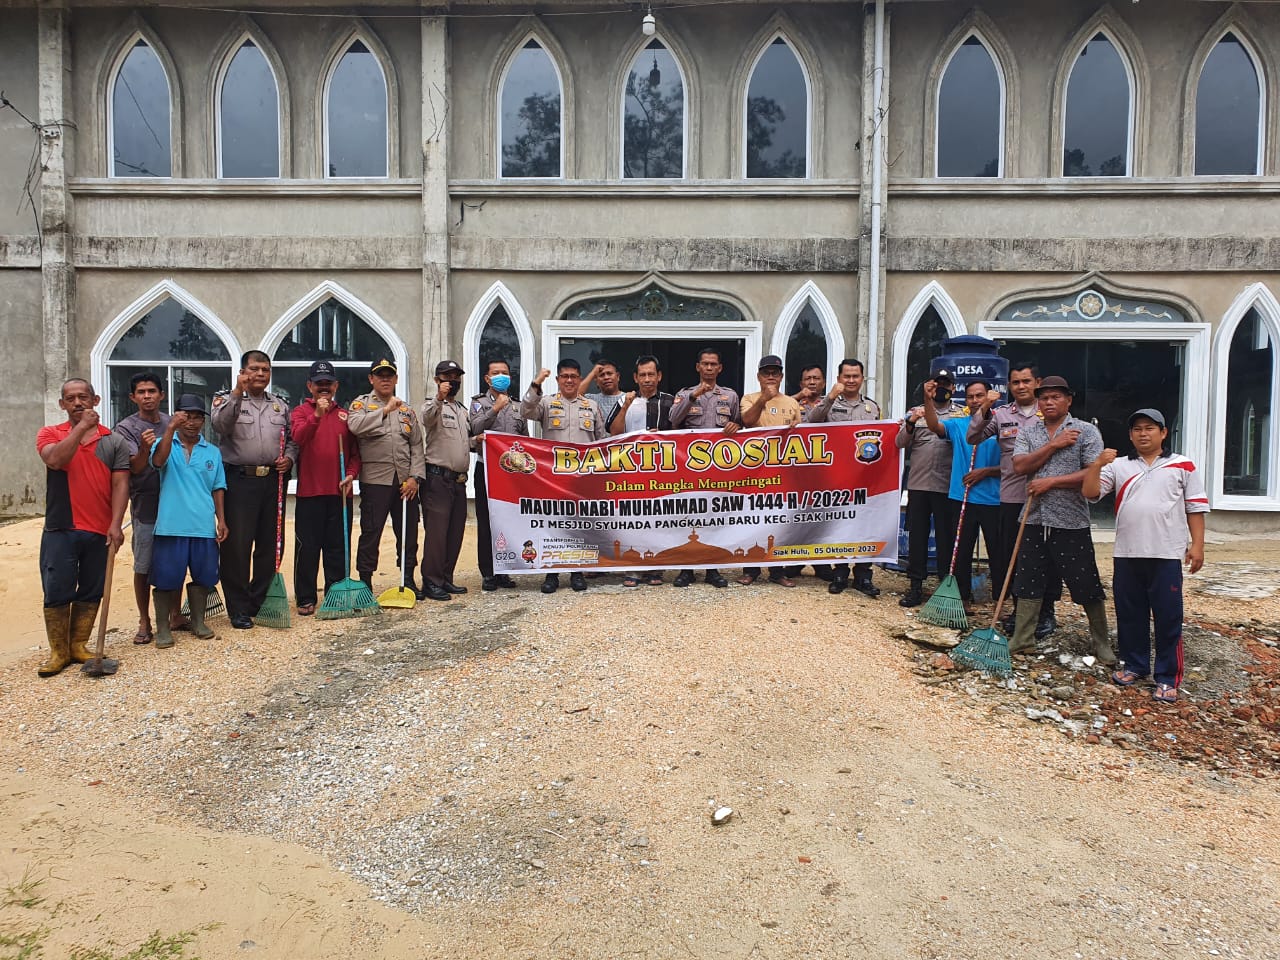 Sambut Maulid Nabi, Personil Polsek Siak Hulu Goro Bersihkan Masjid